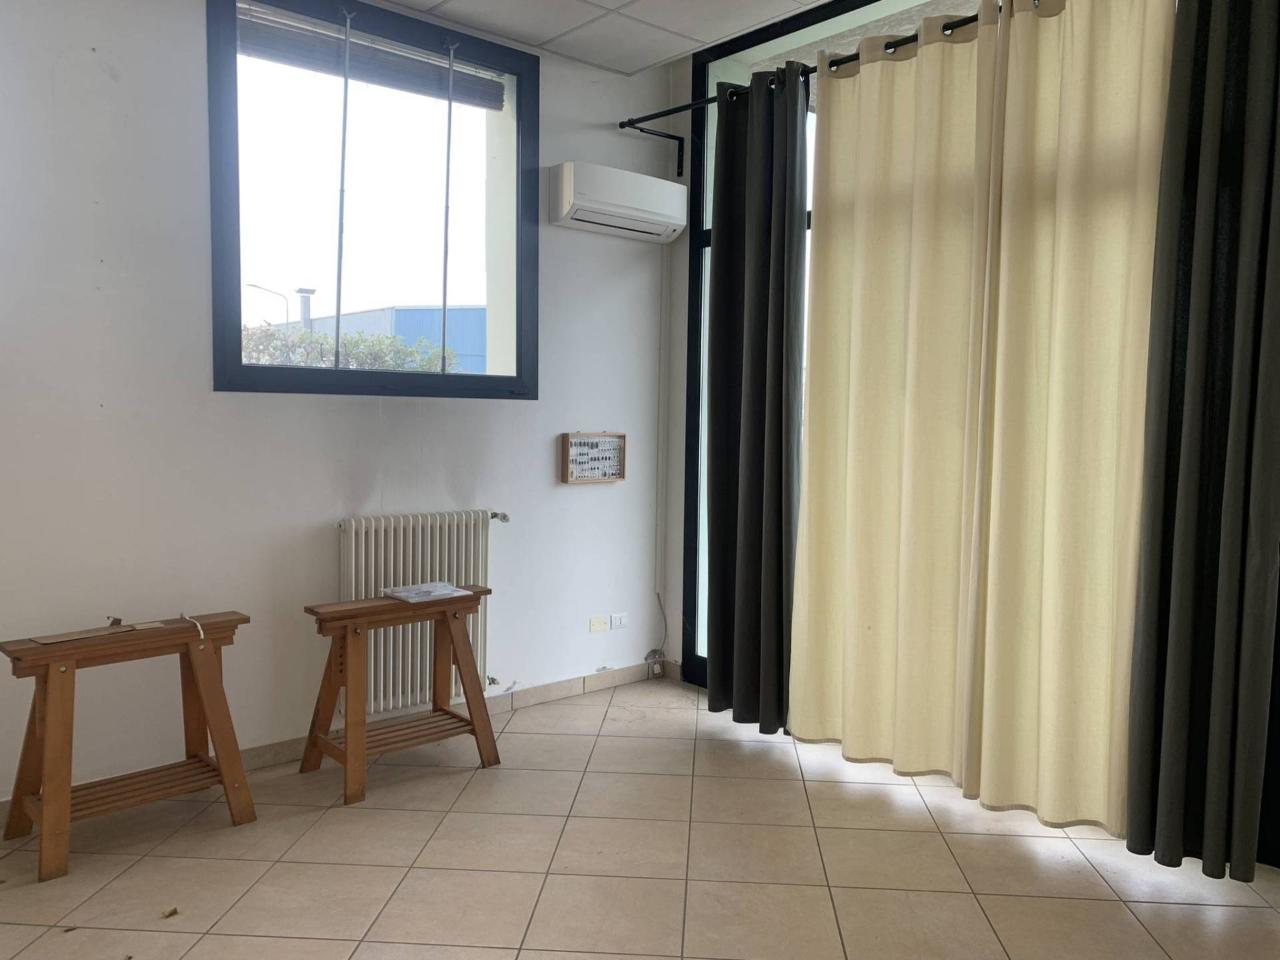 Ufficio condiviso in affitto a Bagnara Di Romagna